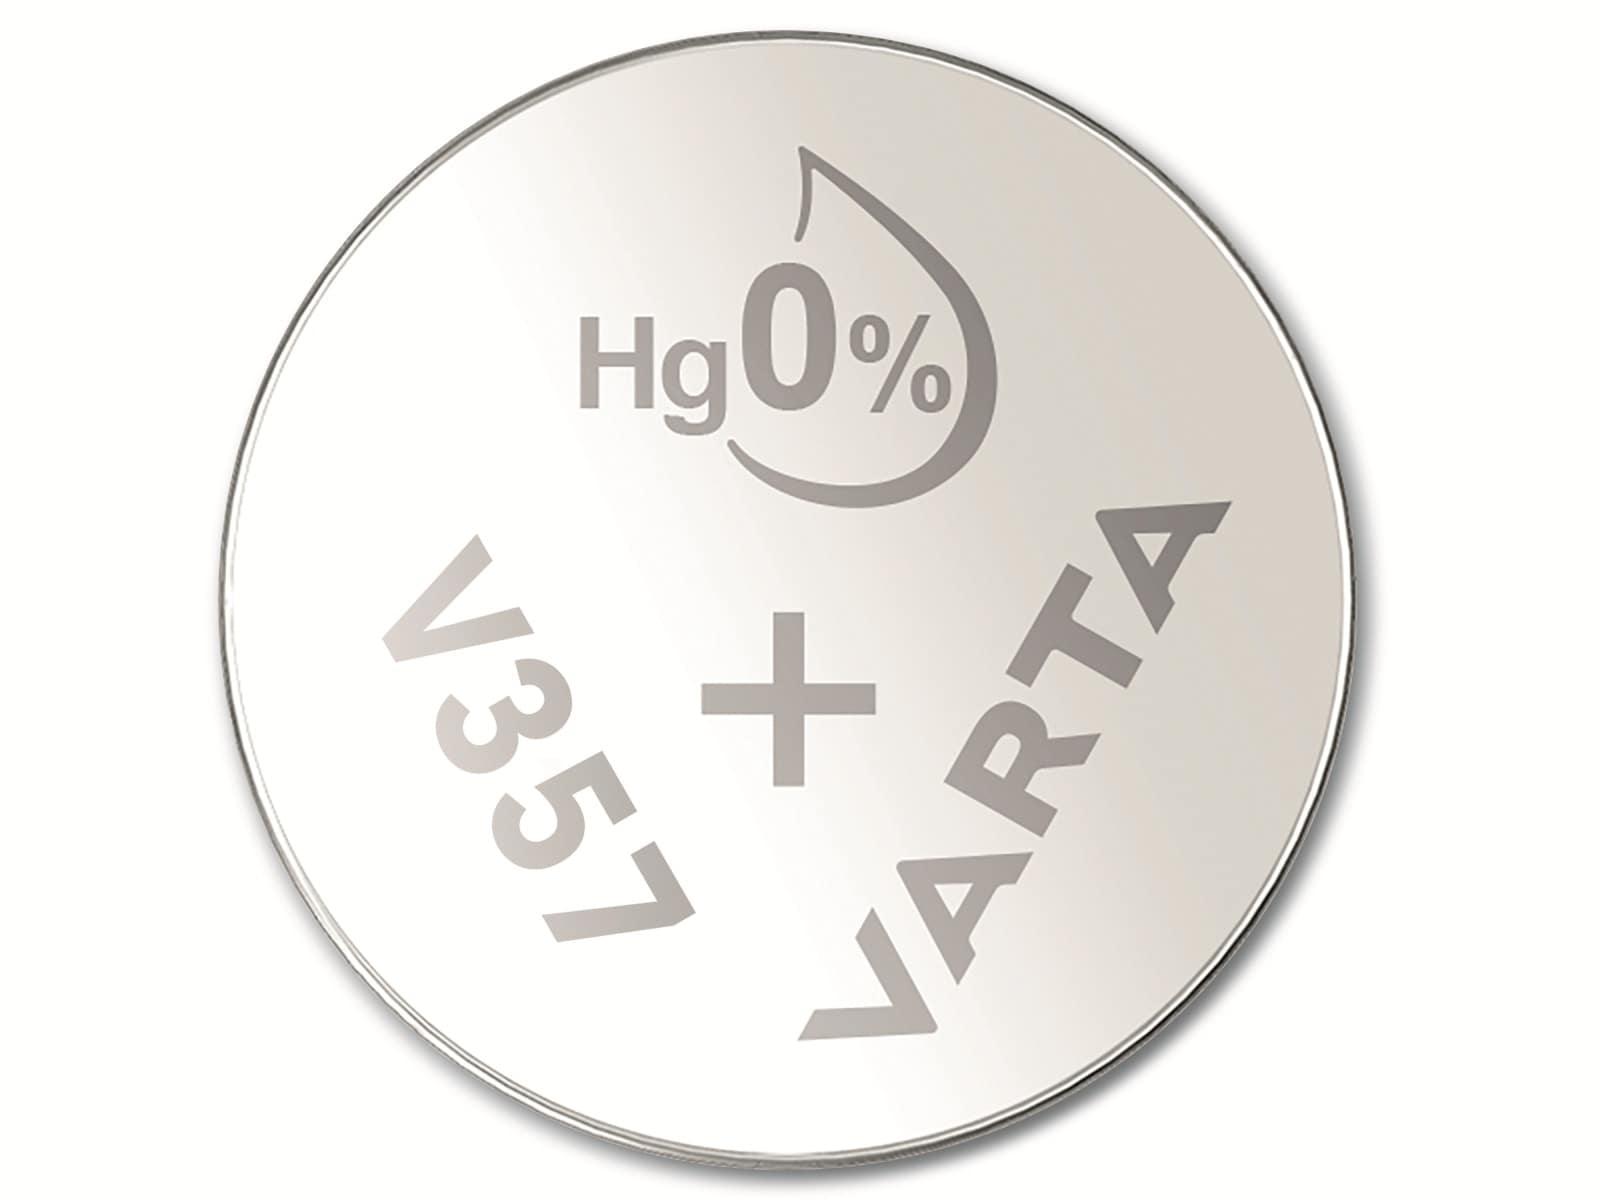 VARTA Knopfzelle Silver Oxide, 357 SR44,  1.55V, 10 Stück